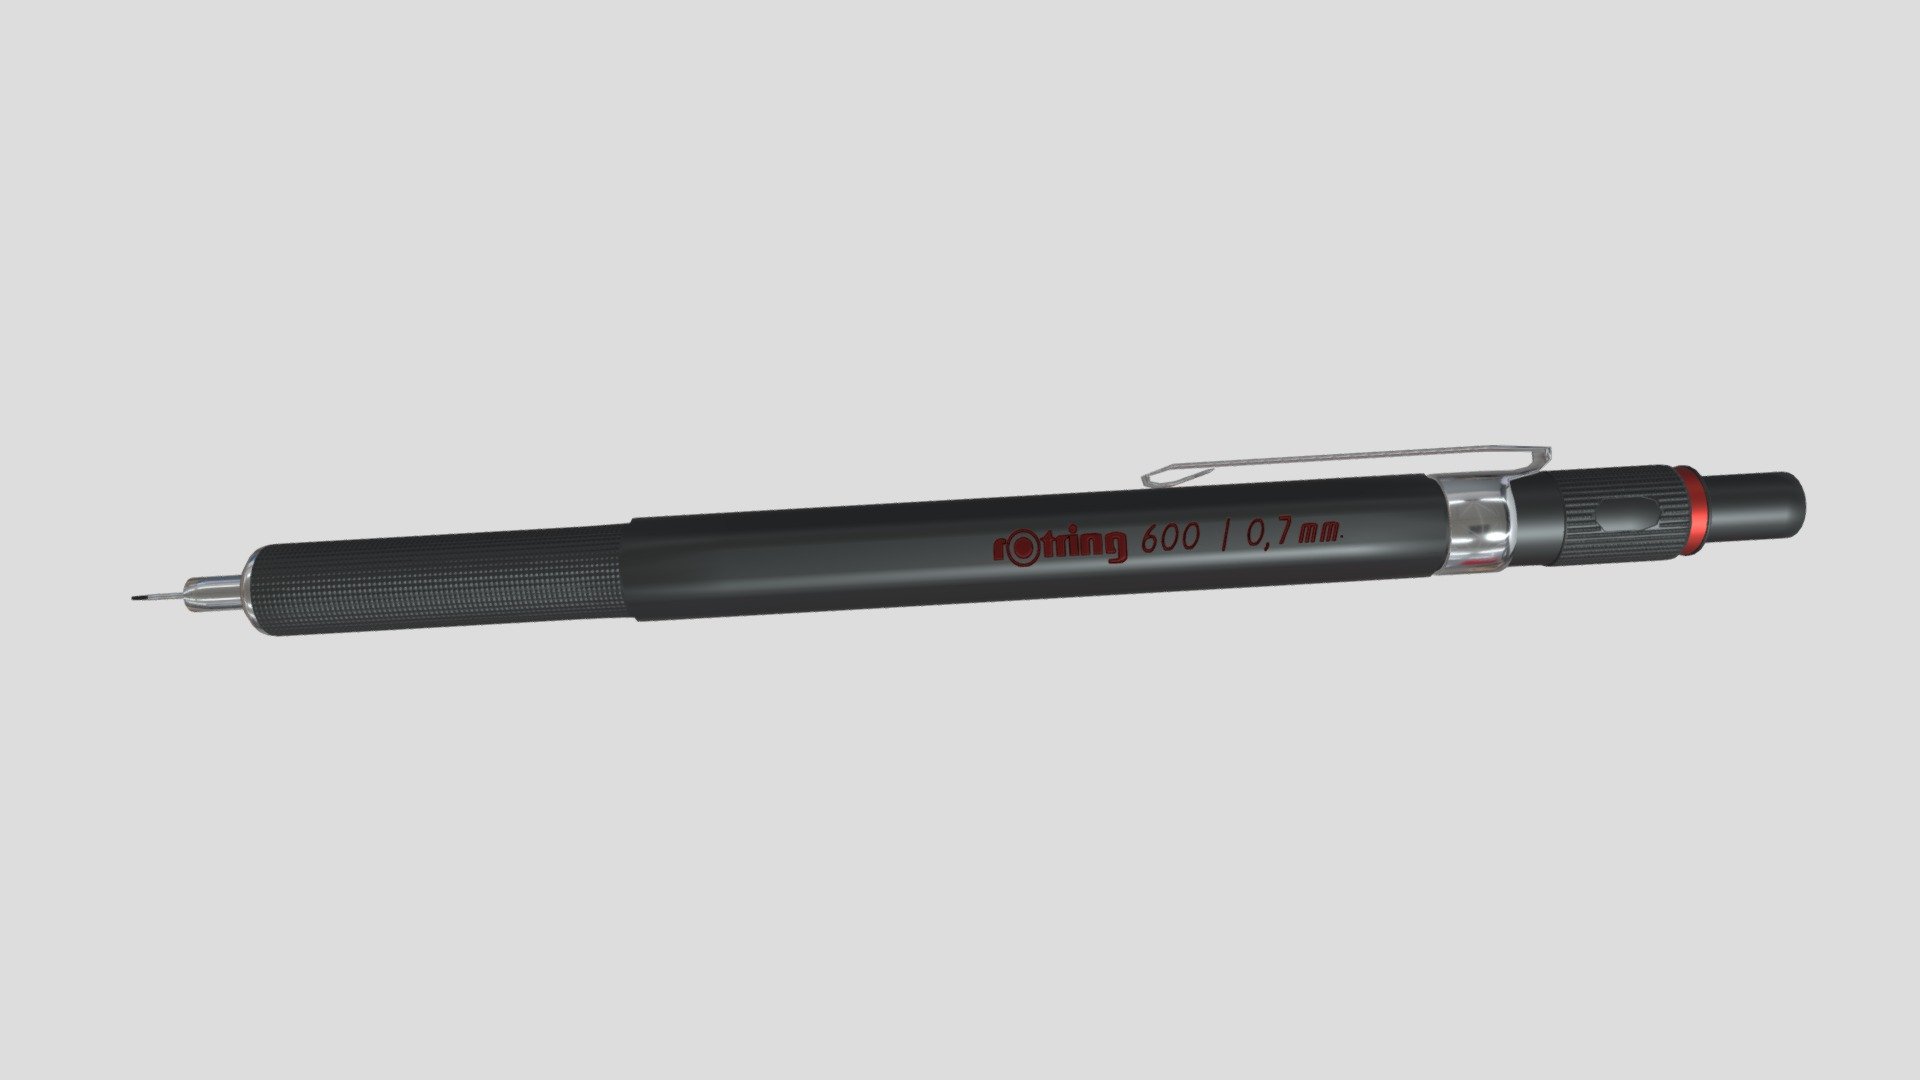 blender-pencil 3D Models - Download 3D blender-pencil Available